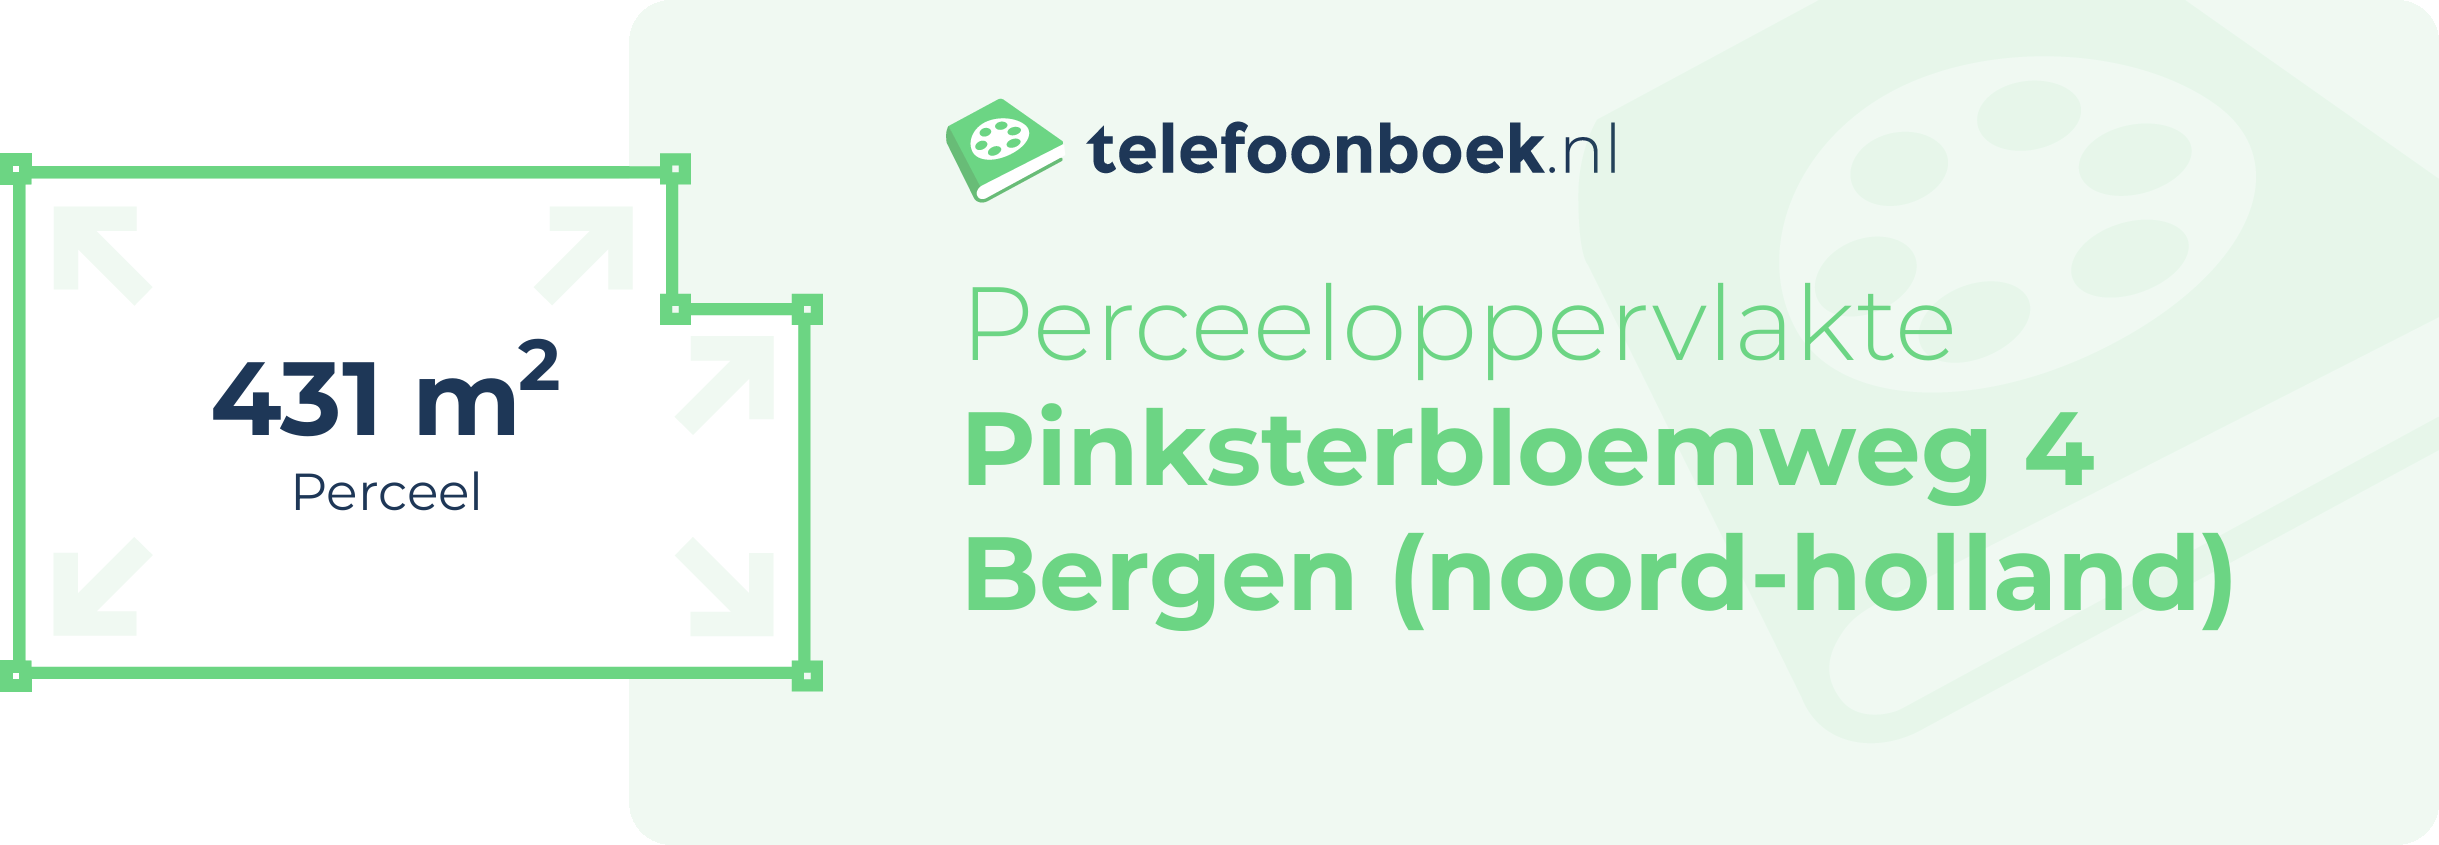 Perceeloppervlakte Pinksterbloemweg 4 Bergen (Noord-Holland)